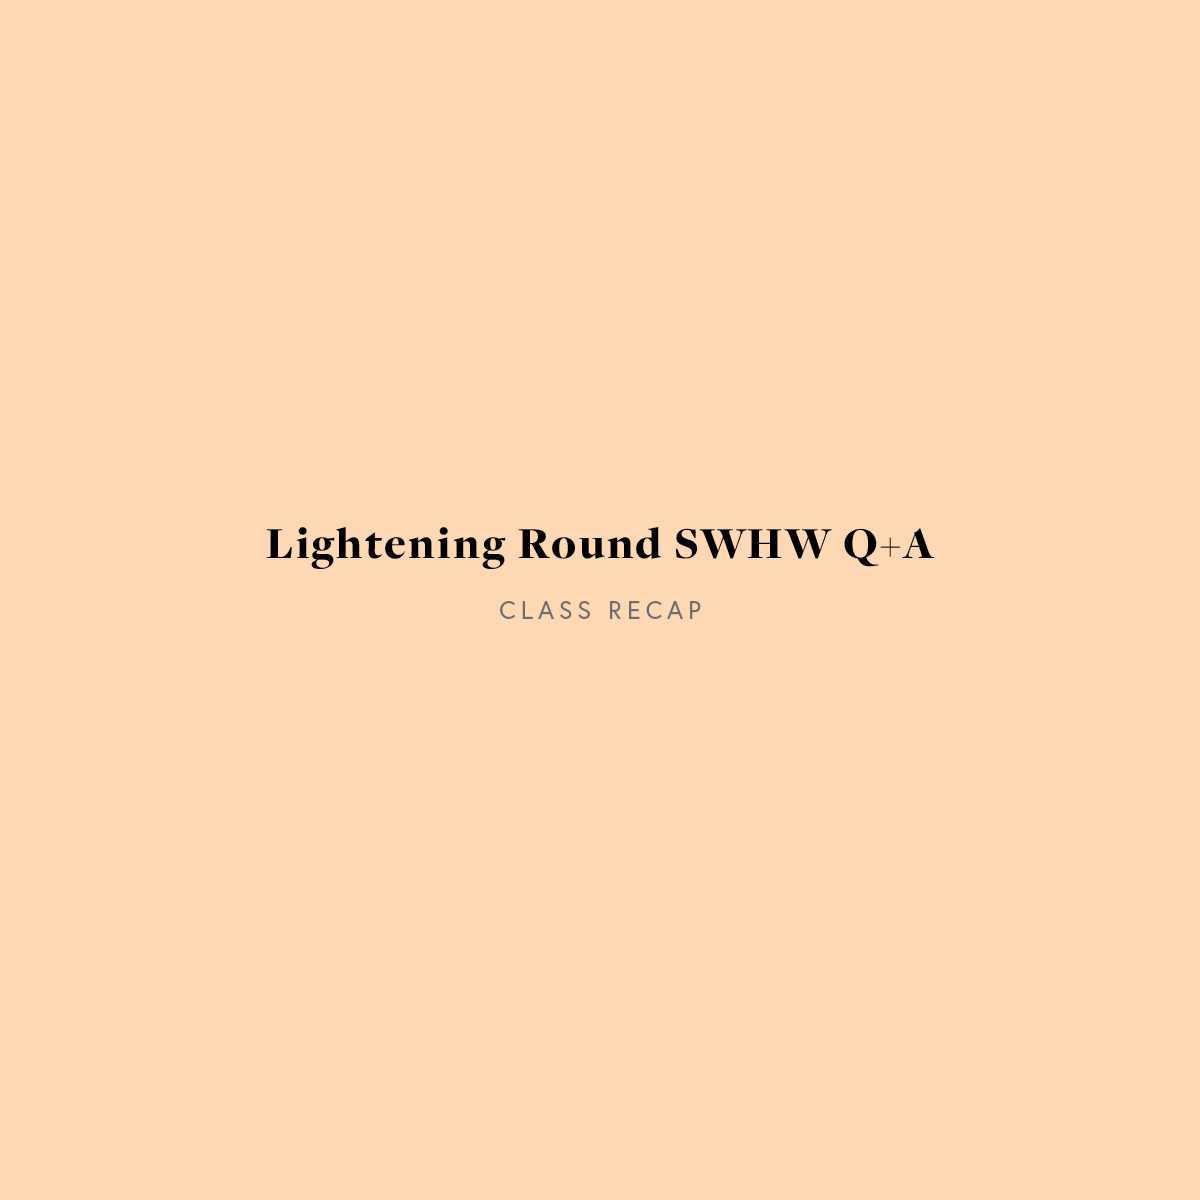 Lightening Round SWHW Q+A